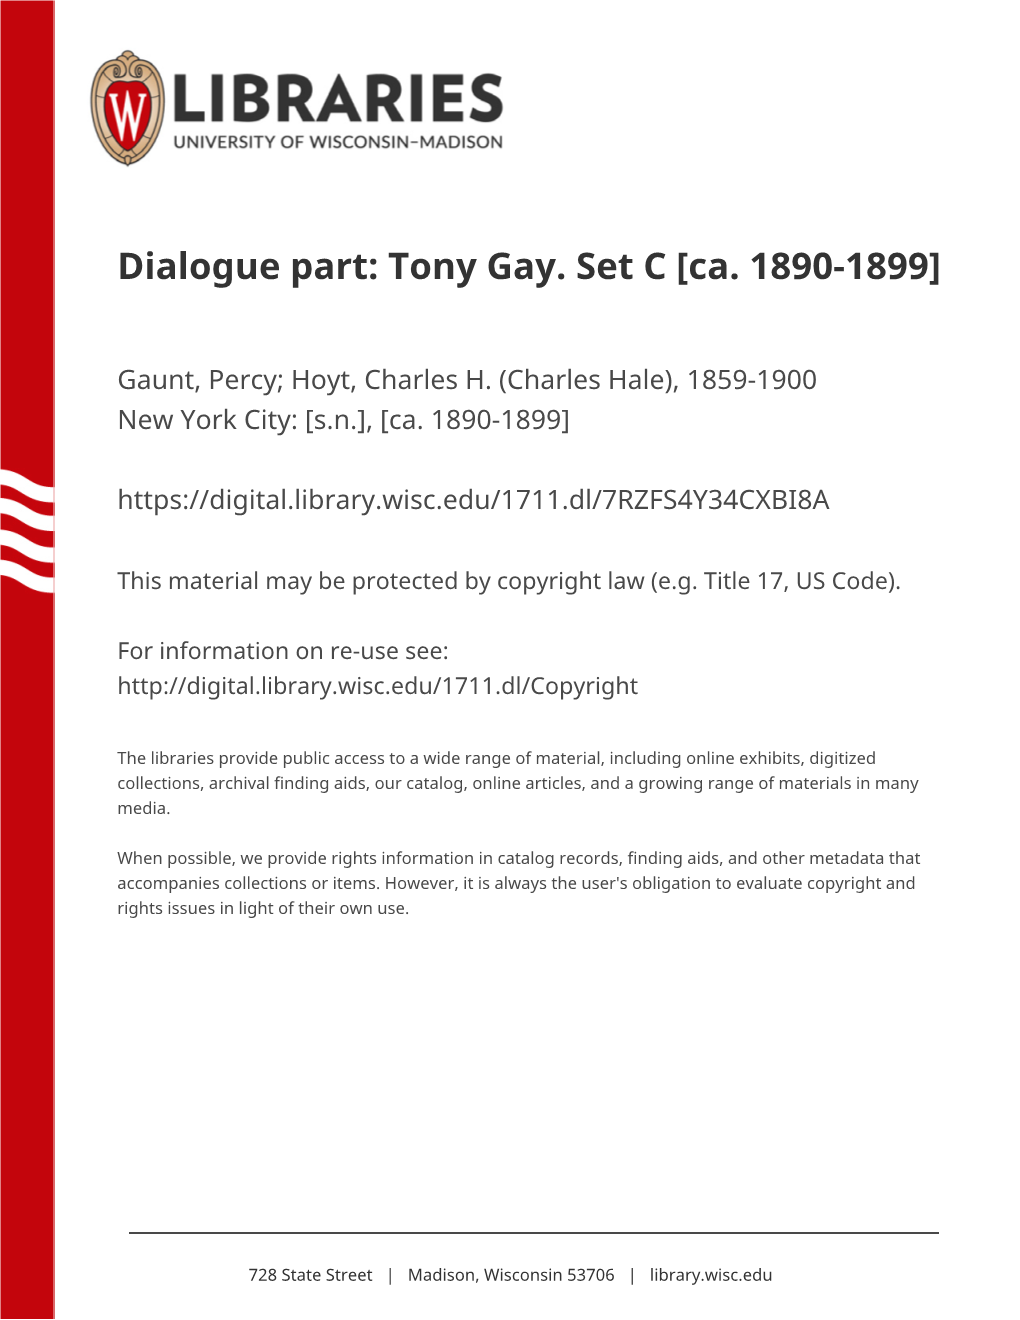 Tony Gay. Set C [Ca. 1890-1899]